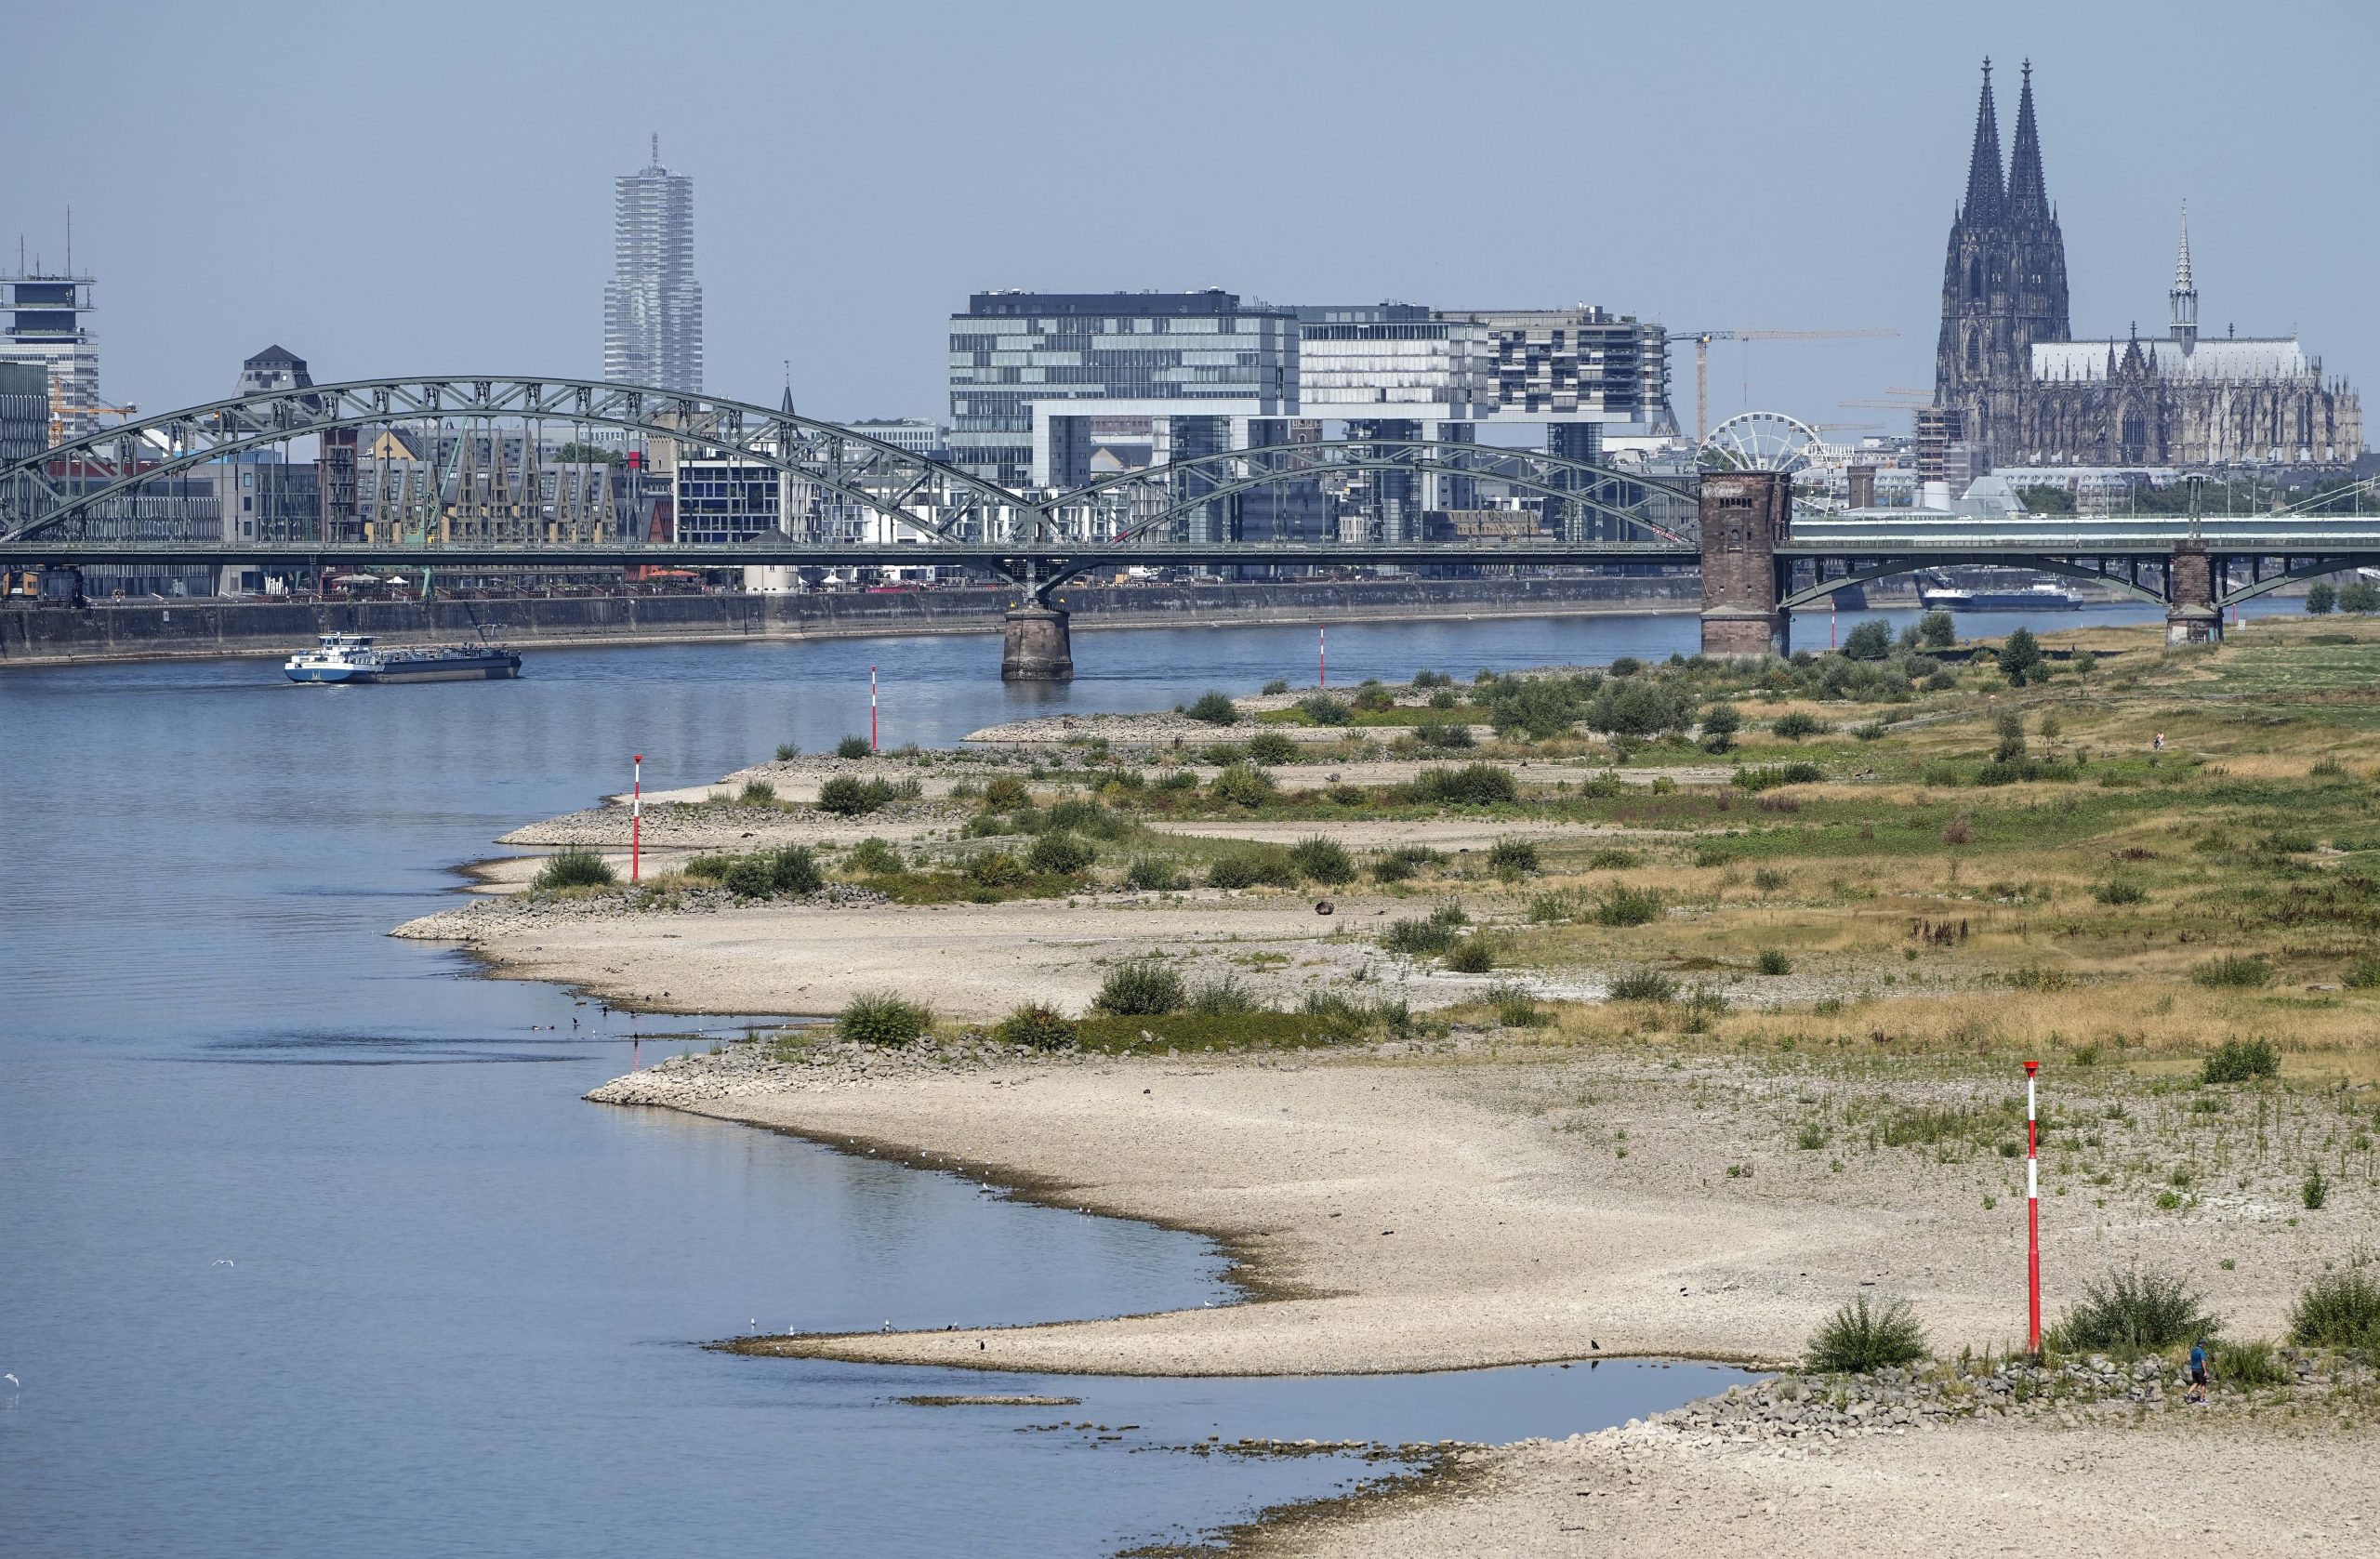 歐大旱 萊茵河瀕斷流 水位數日內或跌至低於標準水平 影響航運